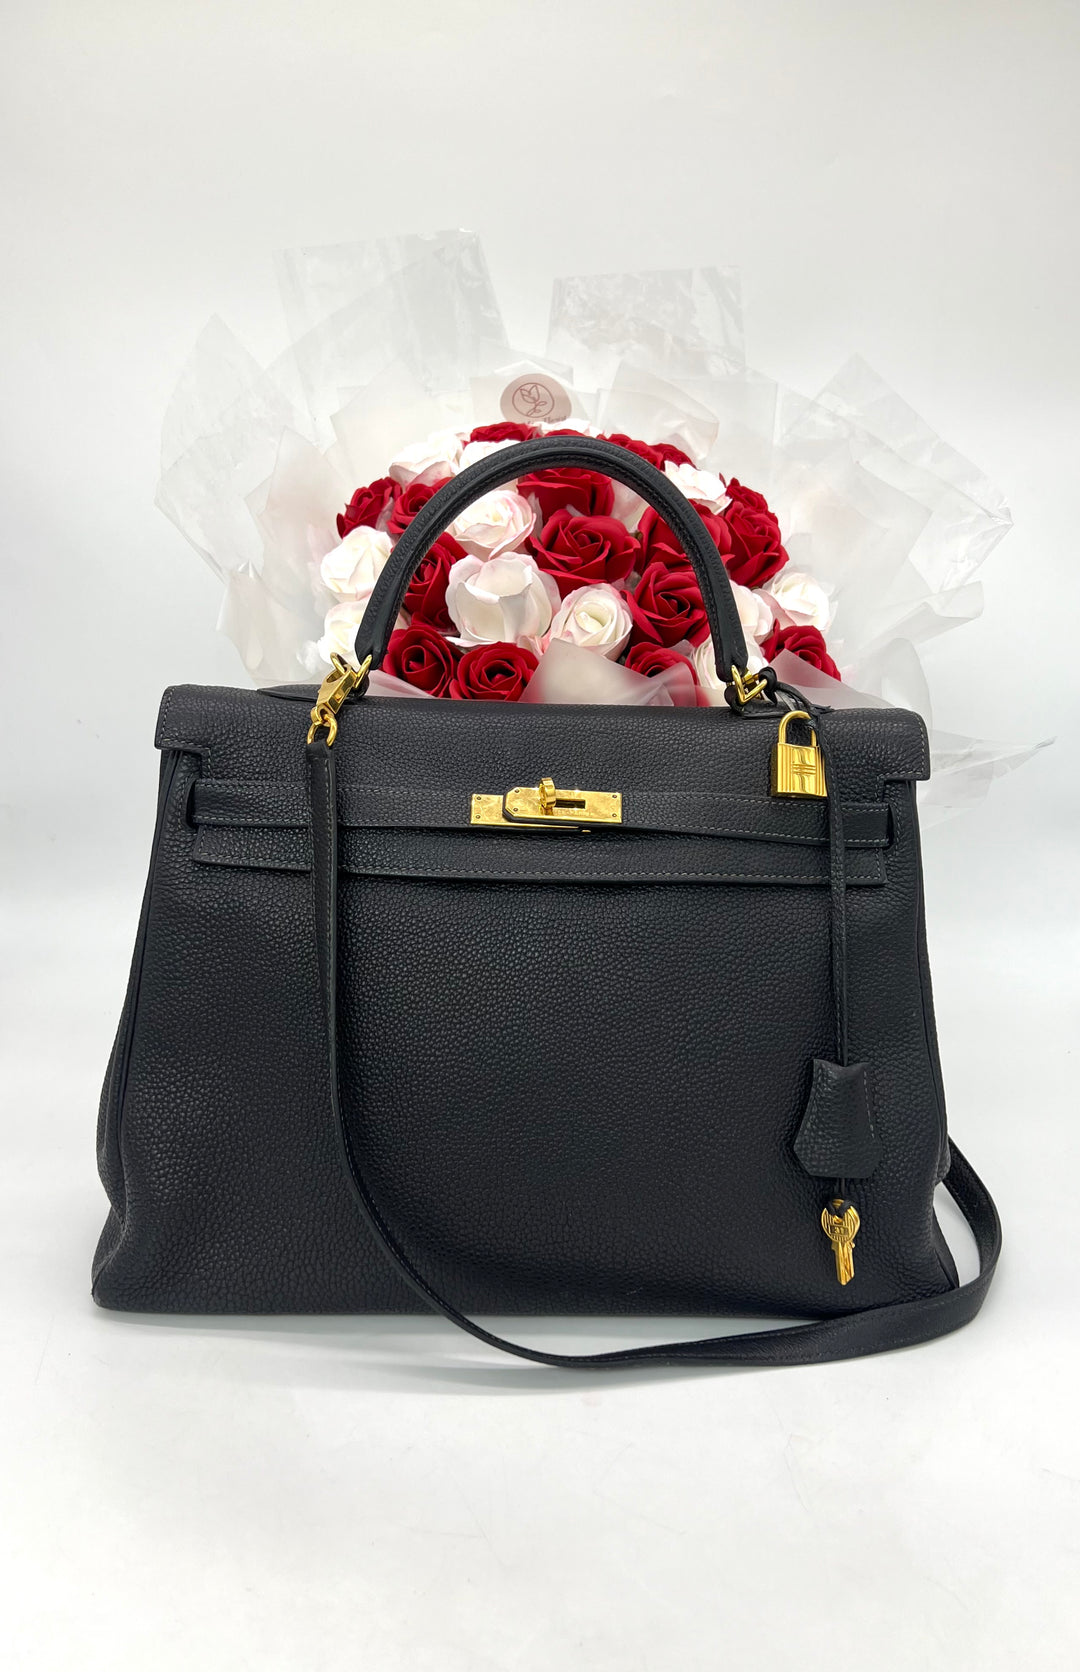 Hermes Kelly 35cm handbag in black togo leather